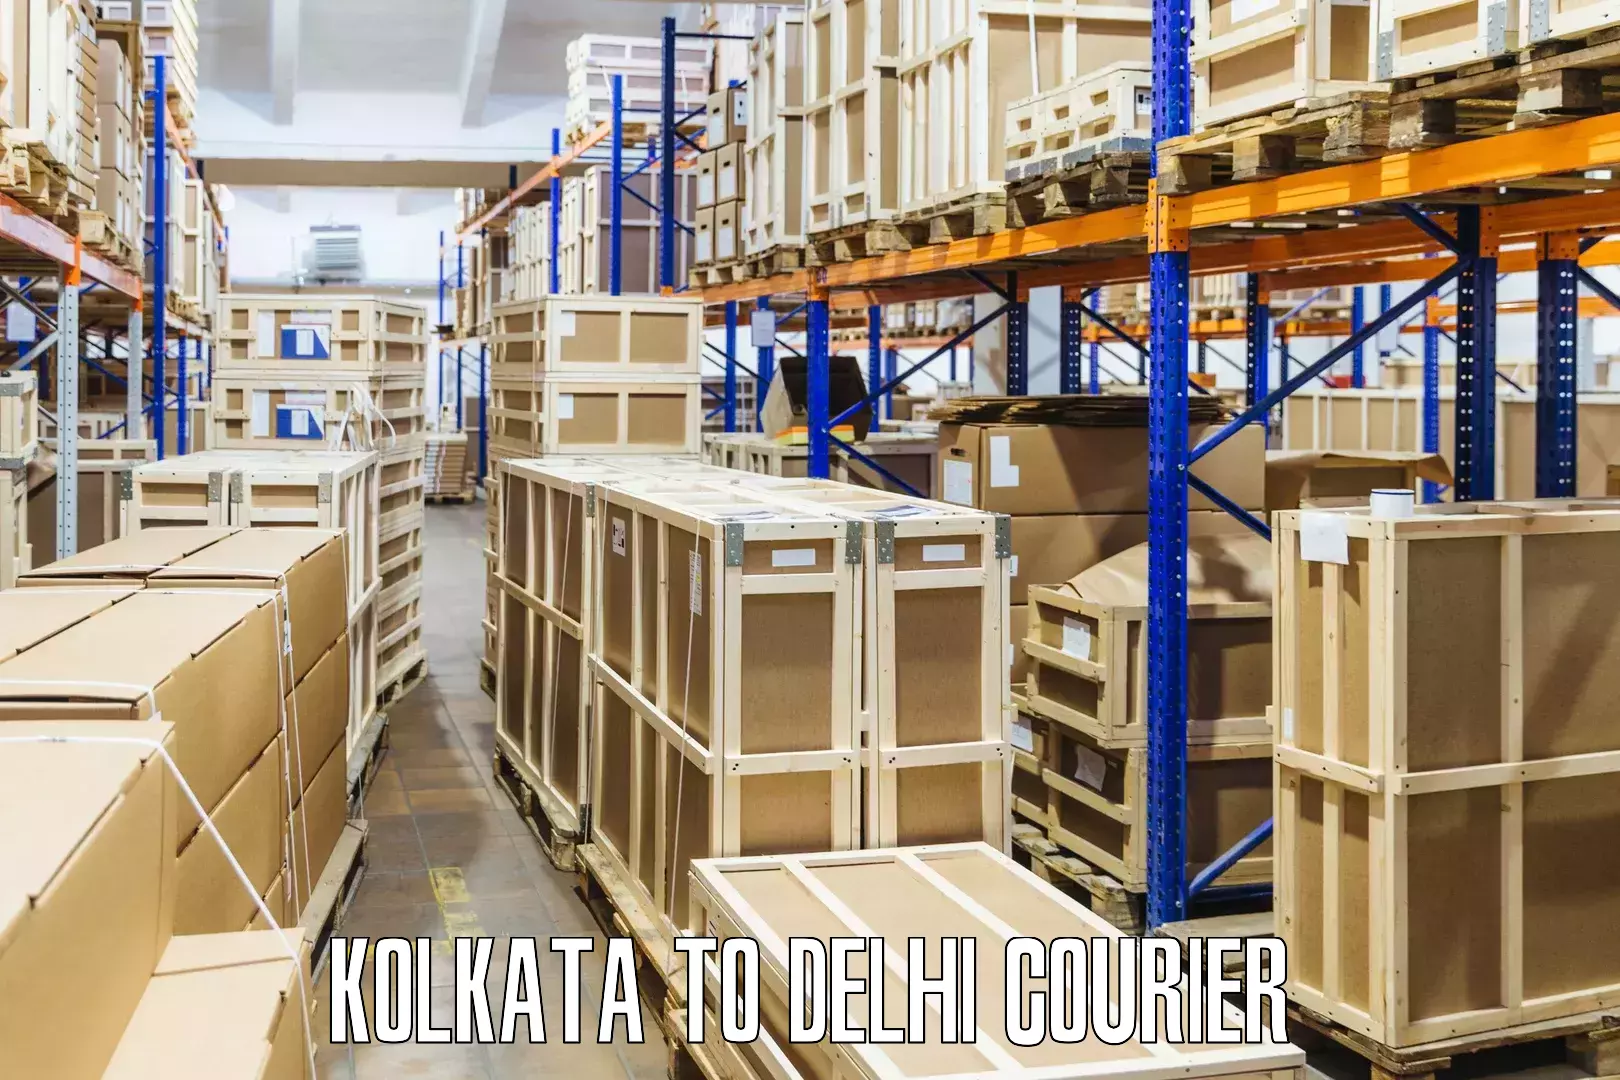 Customer-friendly courier services Kolkata to Delhi